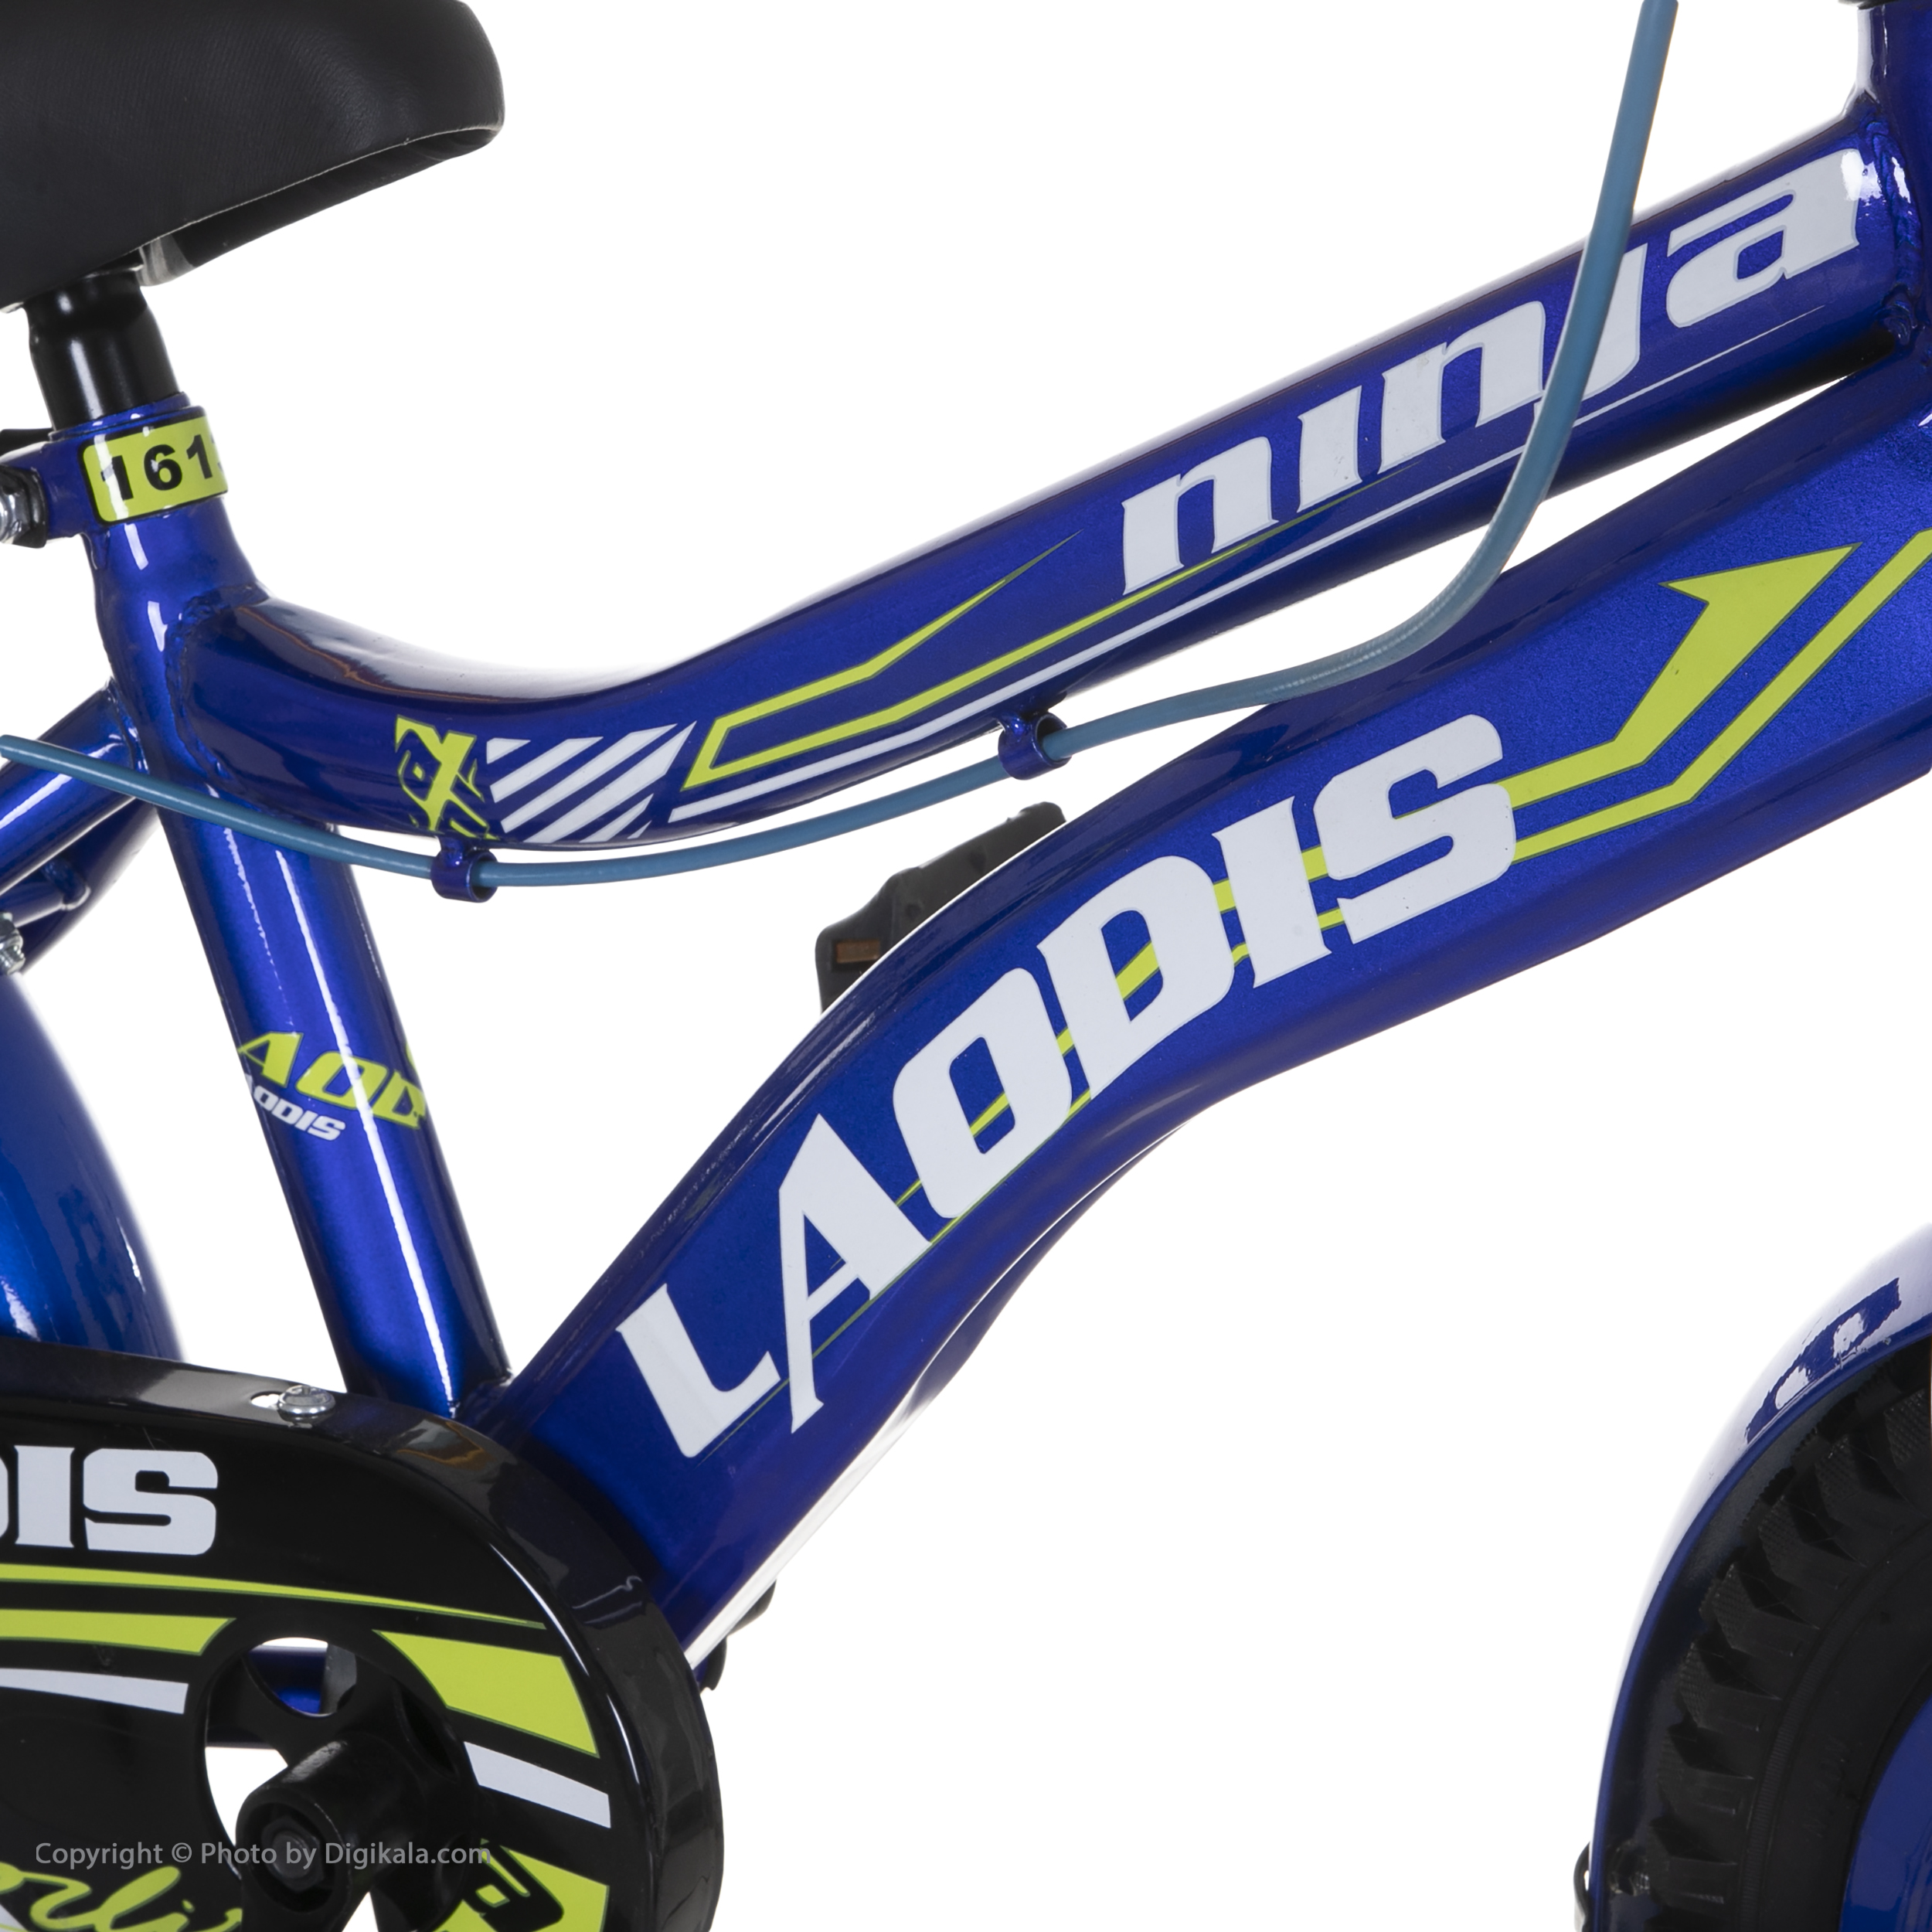 دوچرخه شهری لاودیس مدل 16133 کد 003 سایز 16